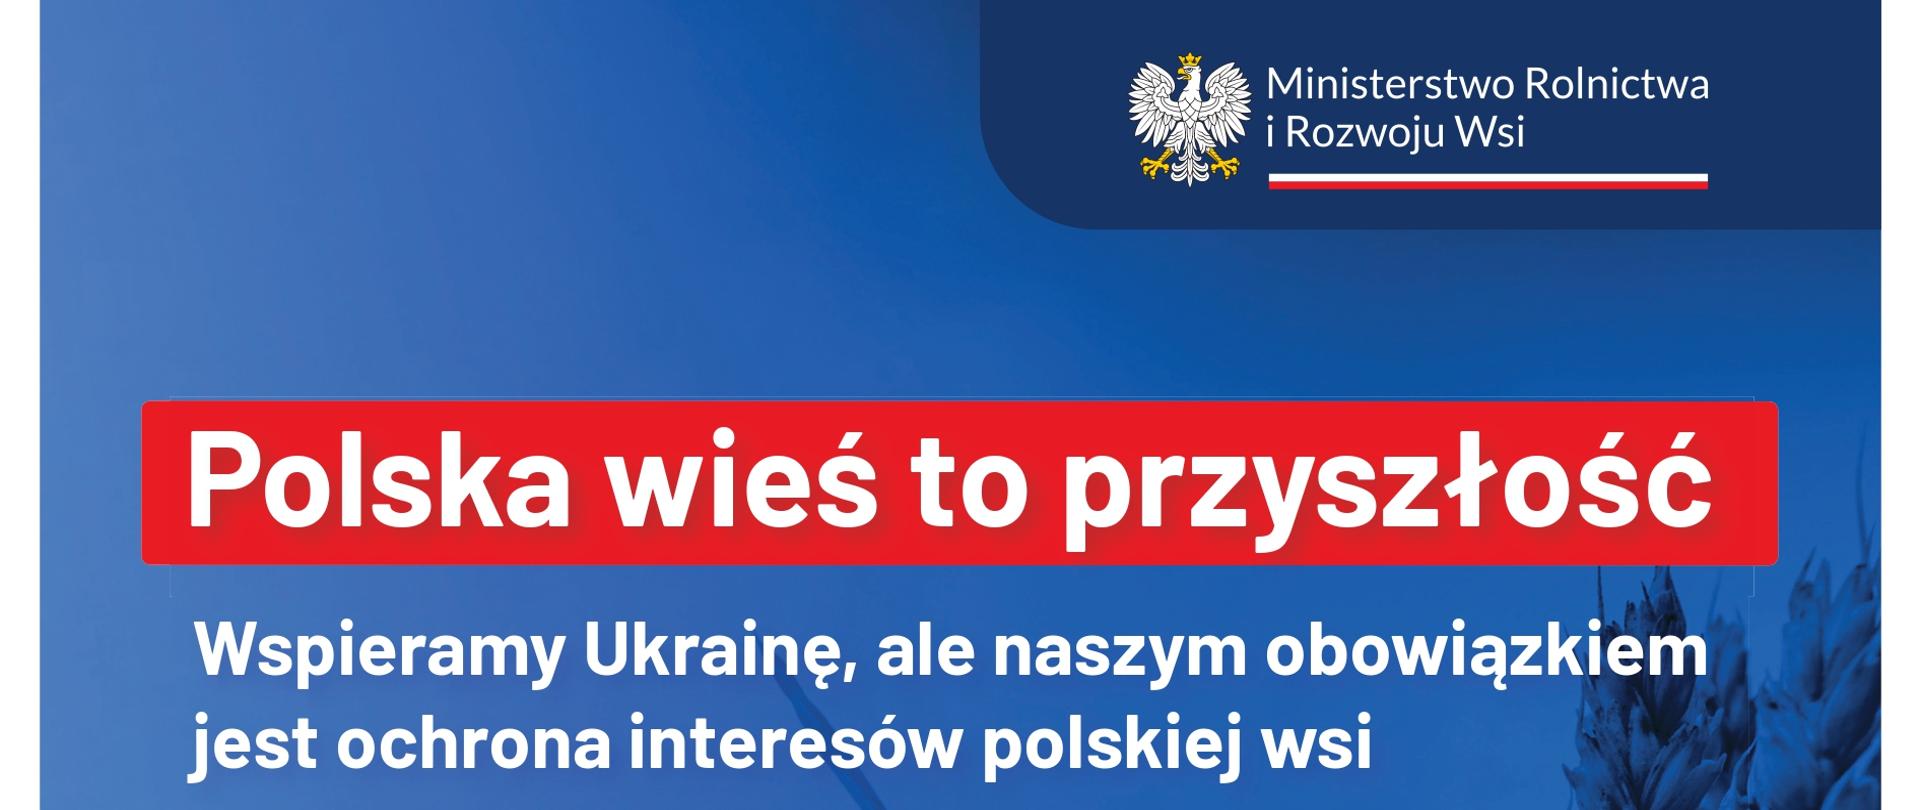 grafika przedstawia plakat informacyjny dotyczący ochrony interesów Polskiej wsi